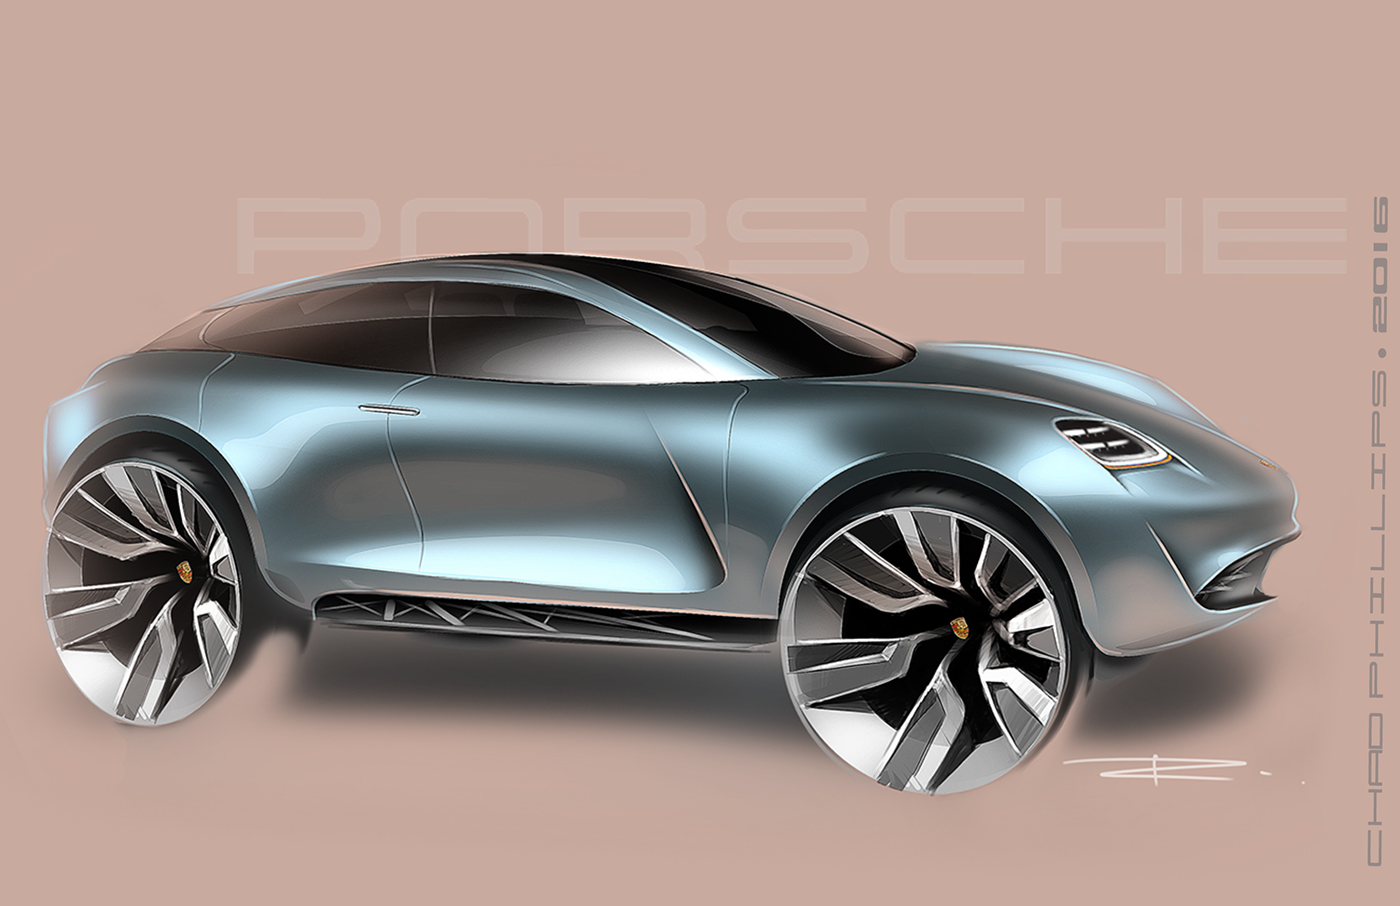 Porsche Transportation Design Automotive design concept design Mission E electric